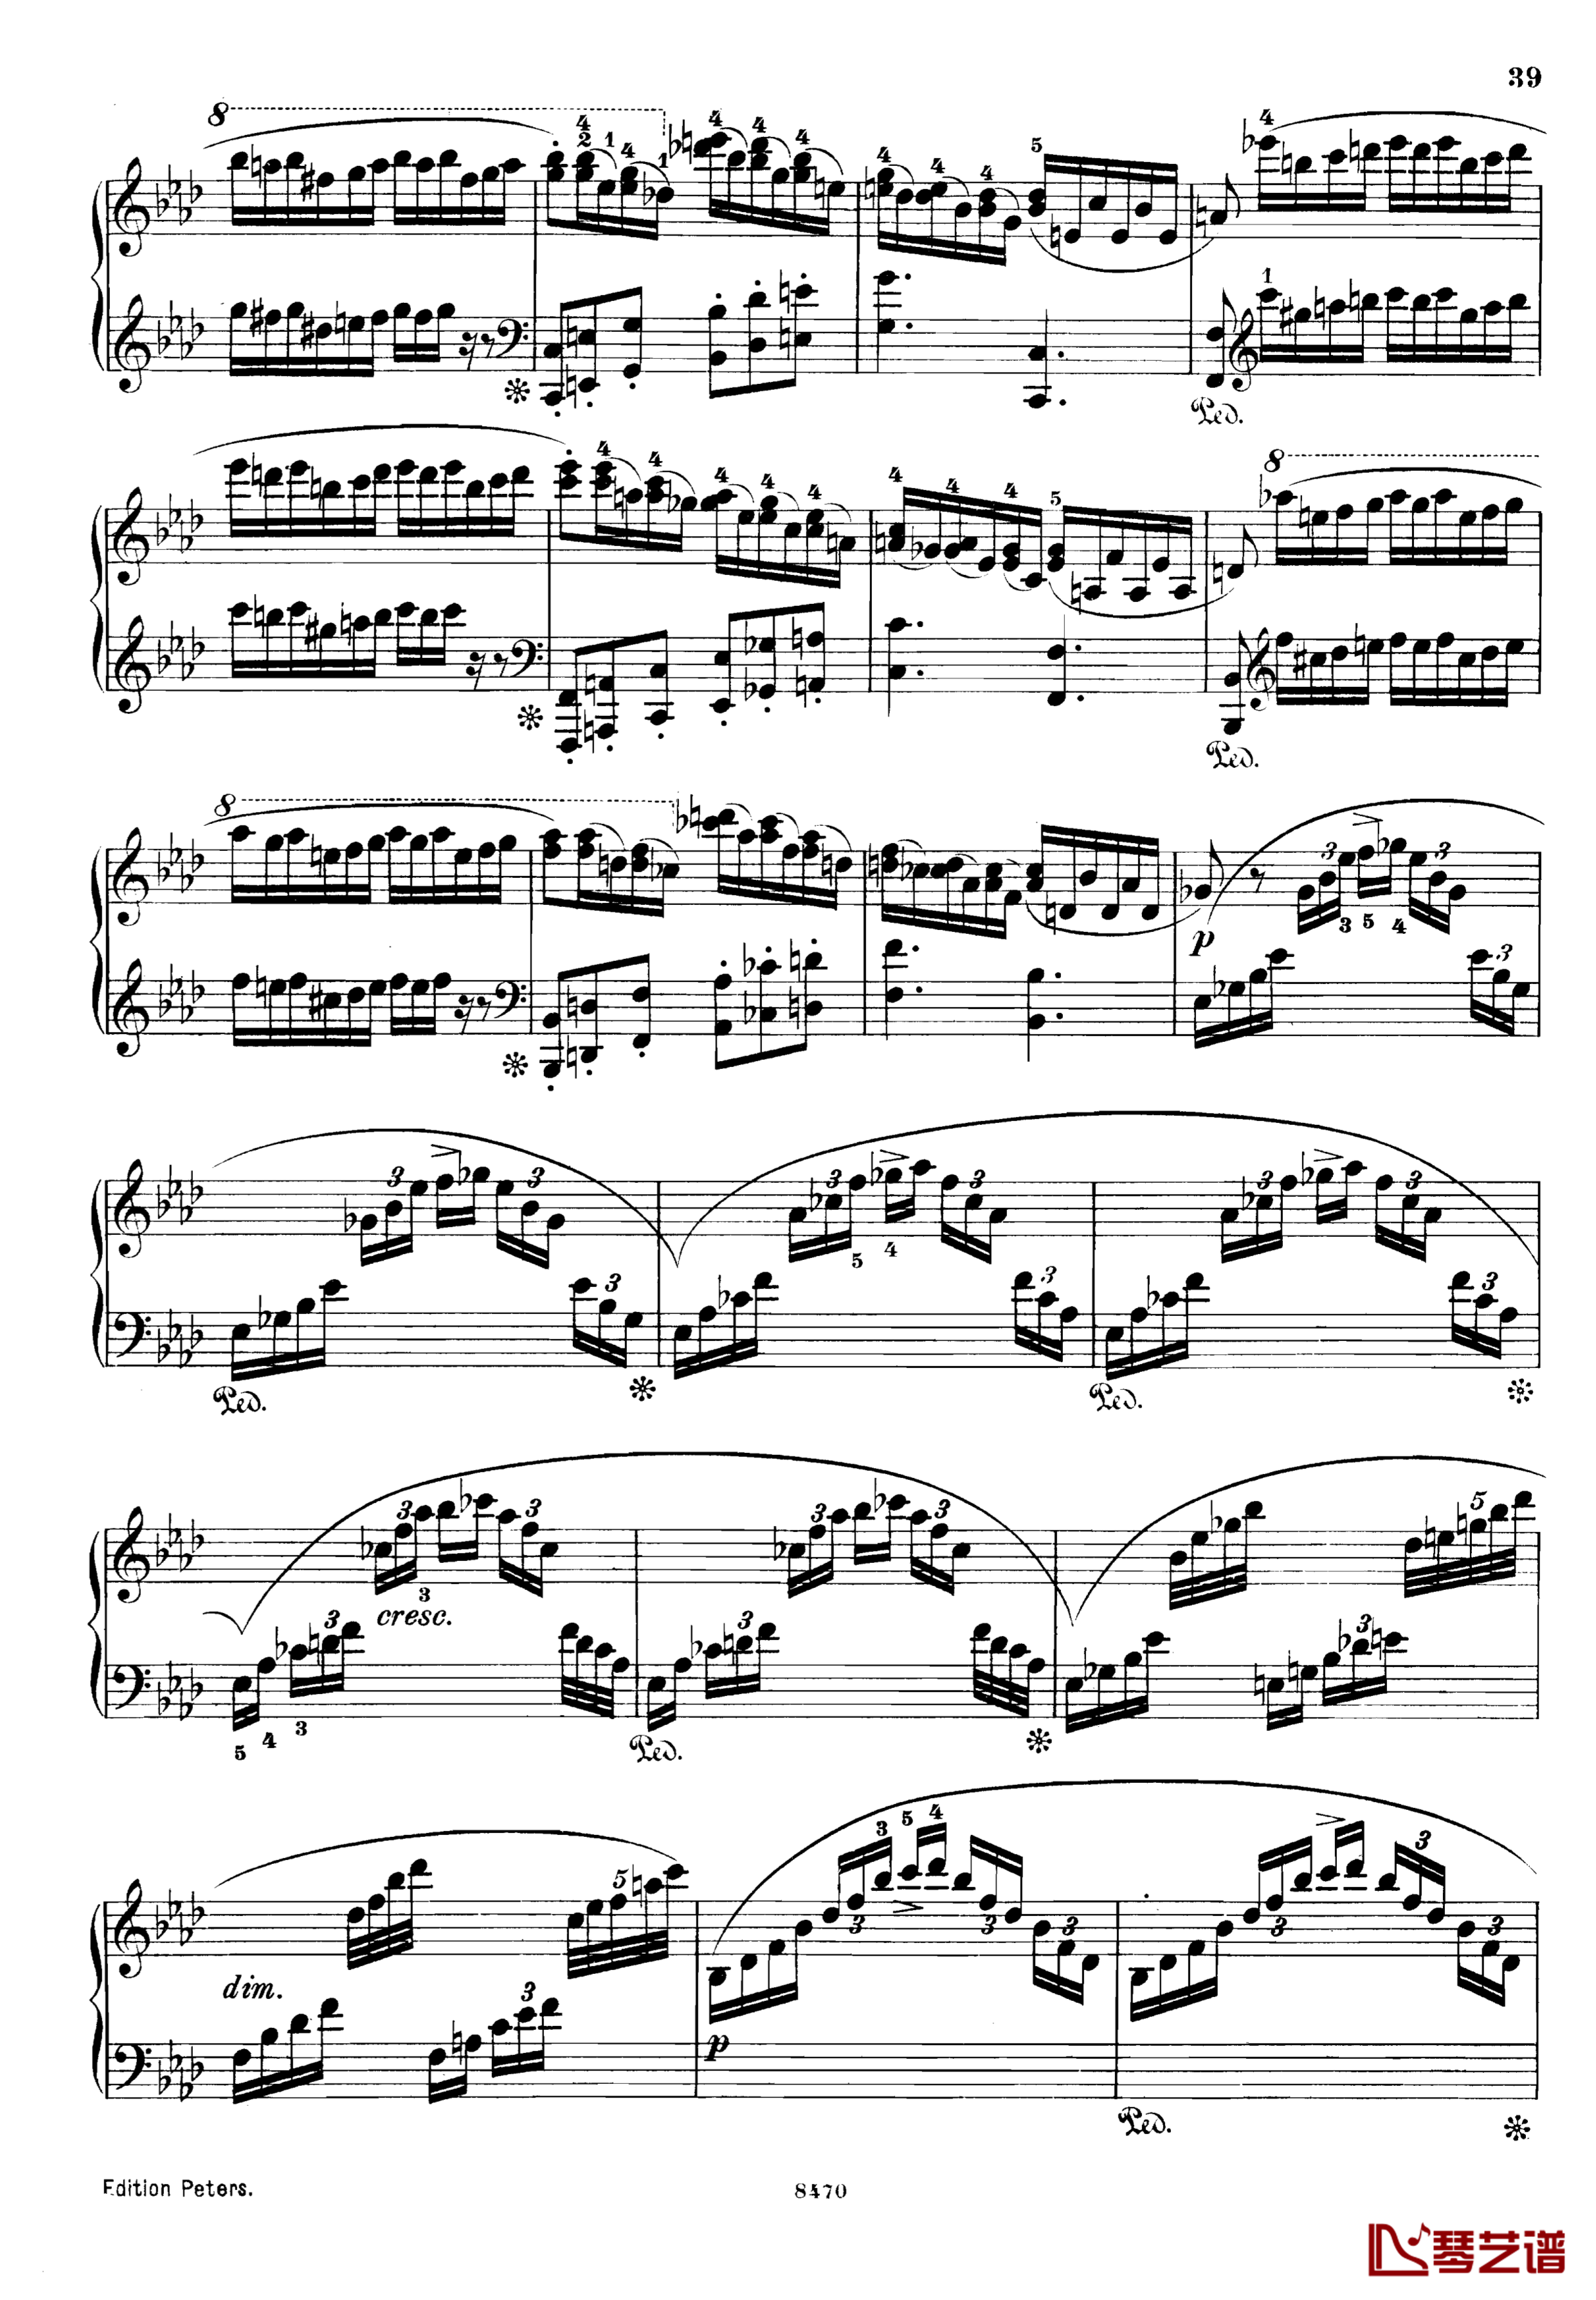 升c小调第三钢琴协奏曲Op.55钢琴谱-克里斯蒂安-里斯39